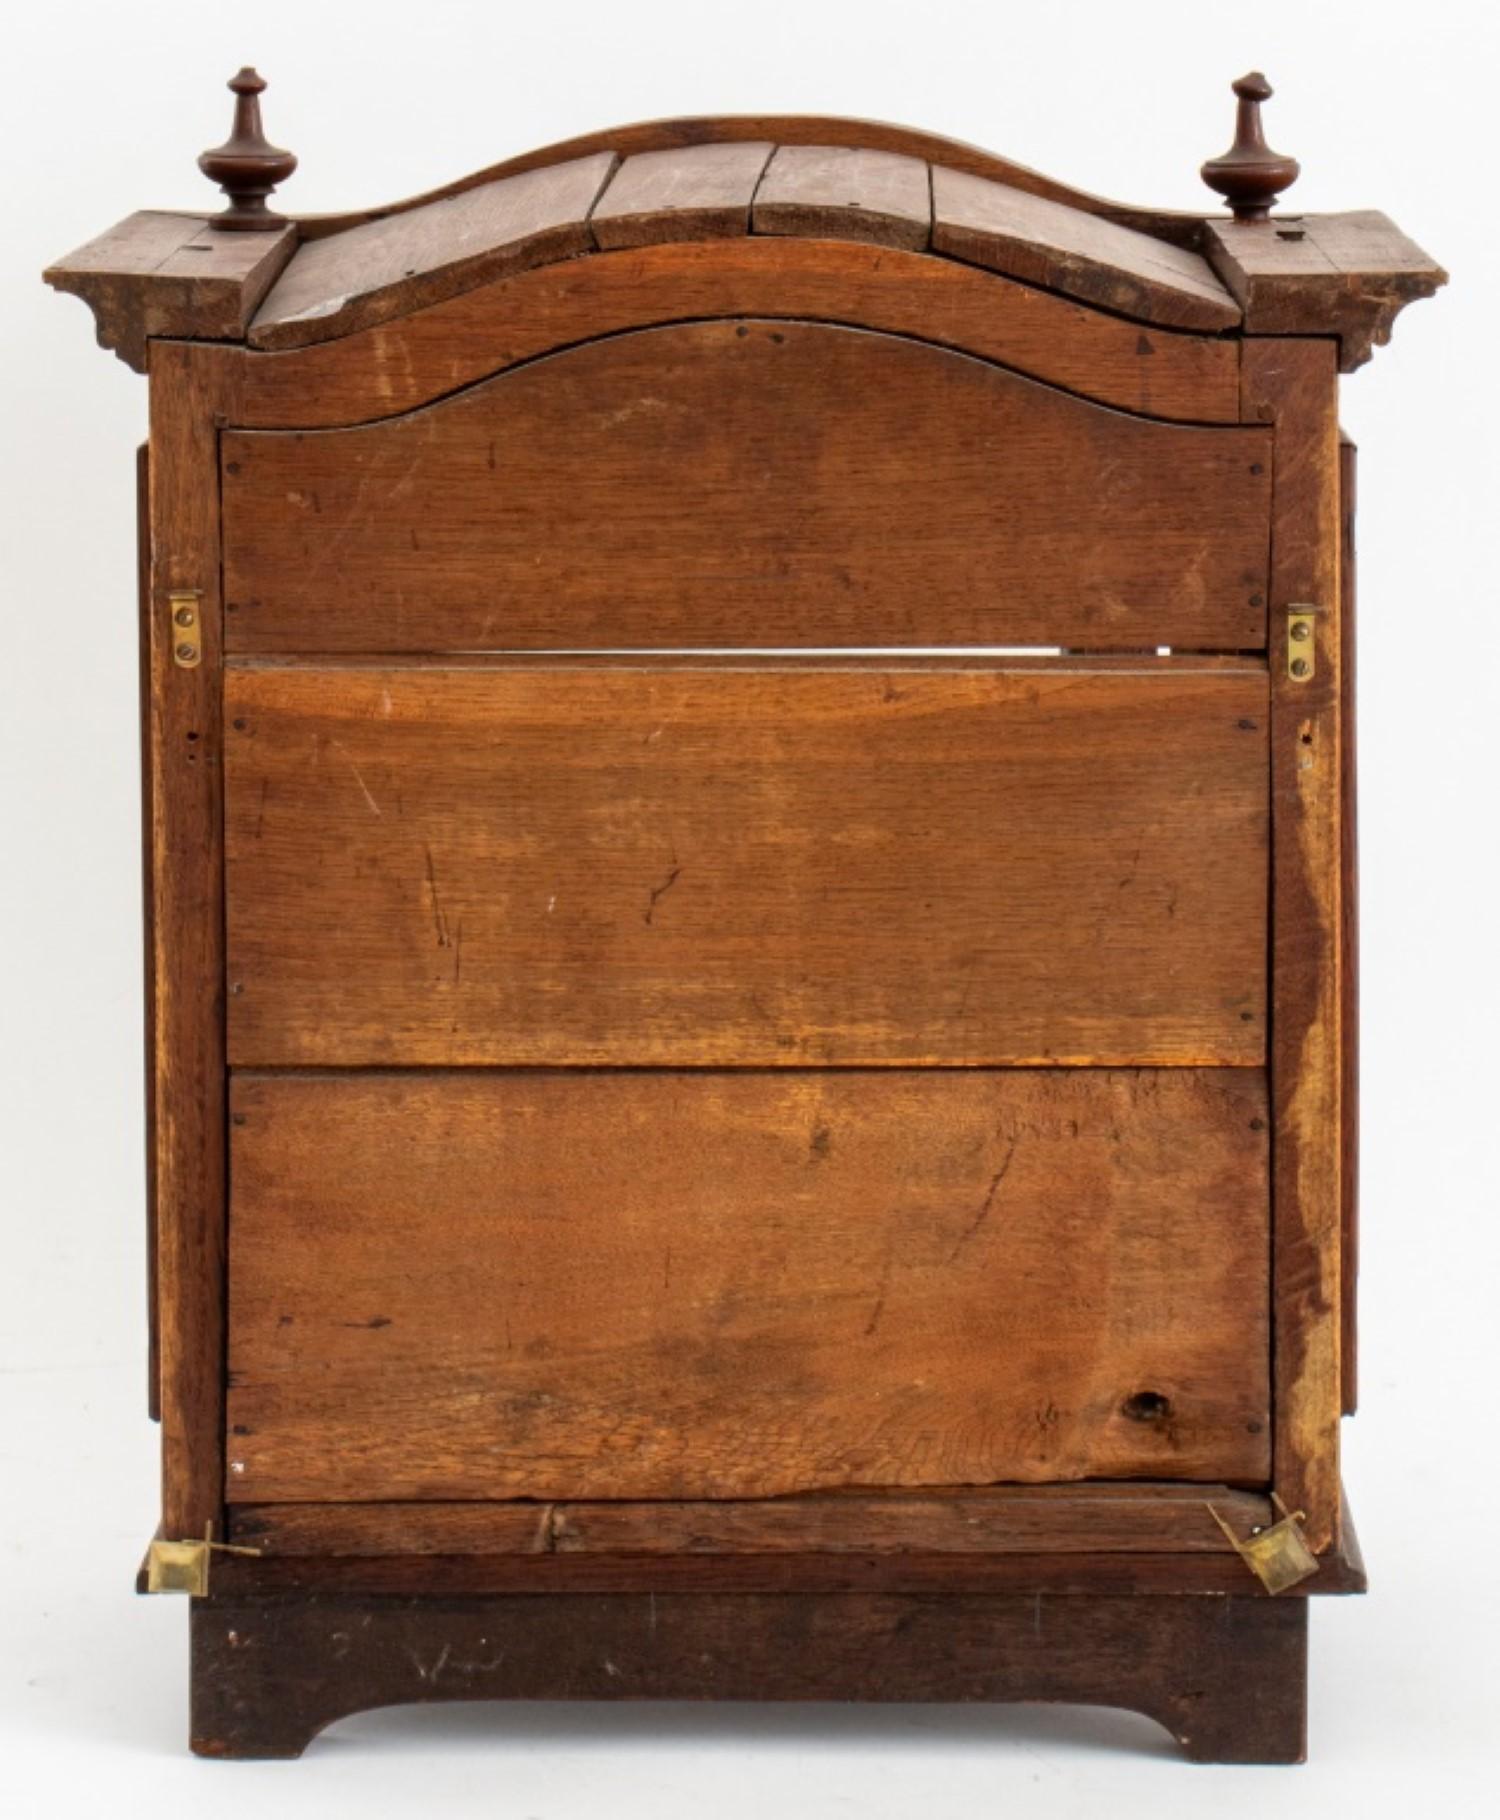 Die Maße für das viktorianische Eichenholz-Uhrengehäuse in Form des oberen Teils einer Standuhr.

Händler: S138XX


